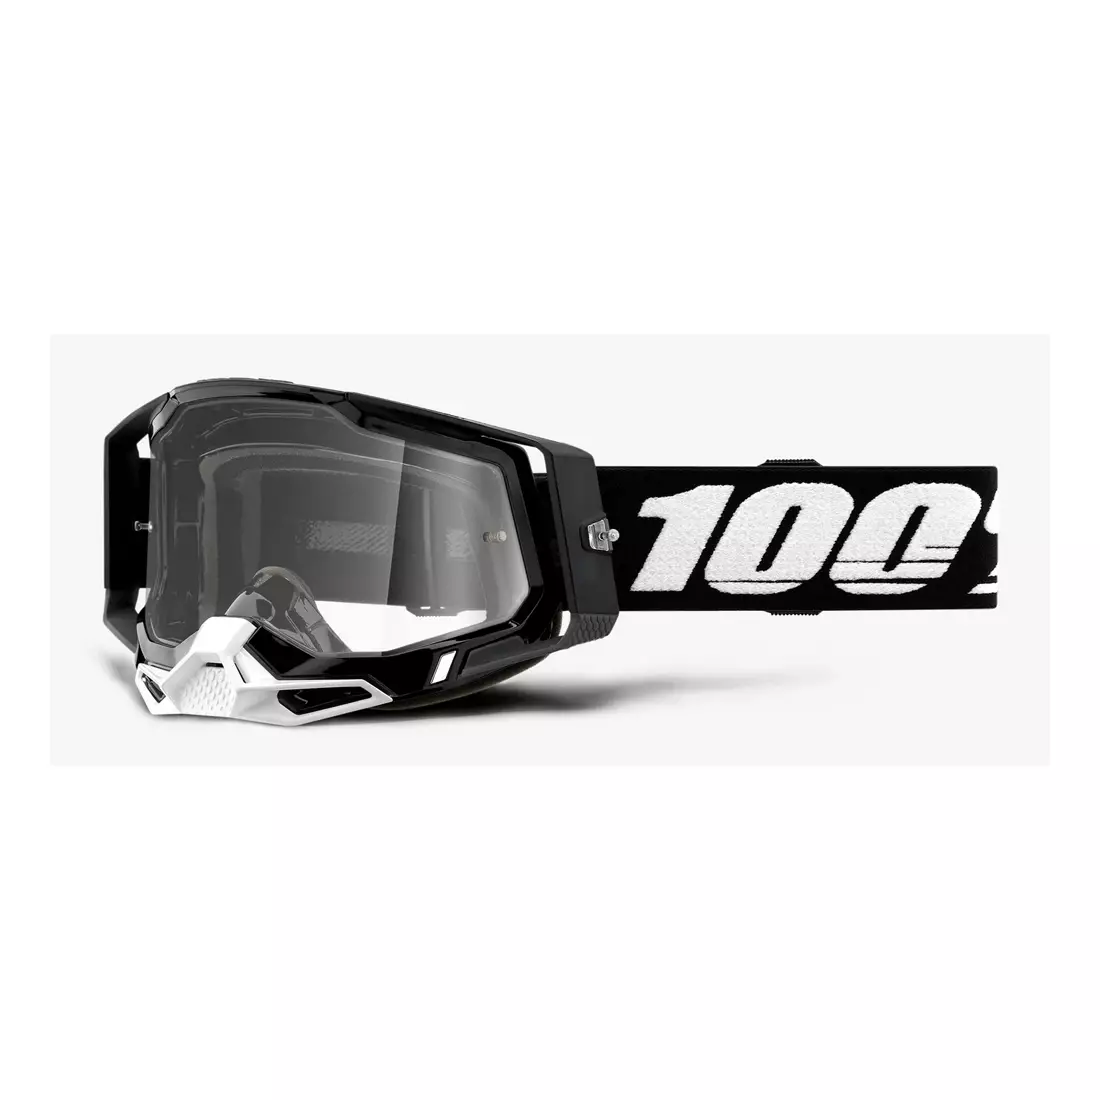 100% Ochelari de protecție pentru ciclism RACECRAFT 2 (lentilă anticearcăn argintie oglindită, LT 25%+/-5% + lentilă anticearcăn transparentă, LT 88%-92% + 10 capace) black STO-50121-252-01